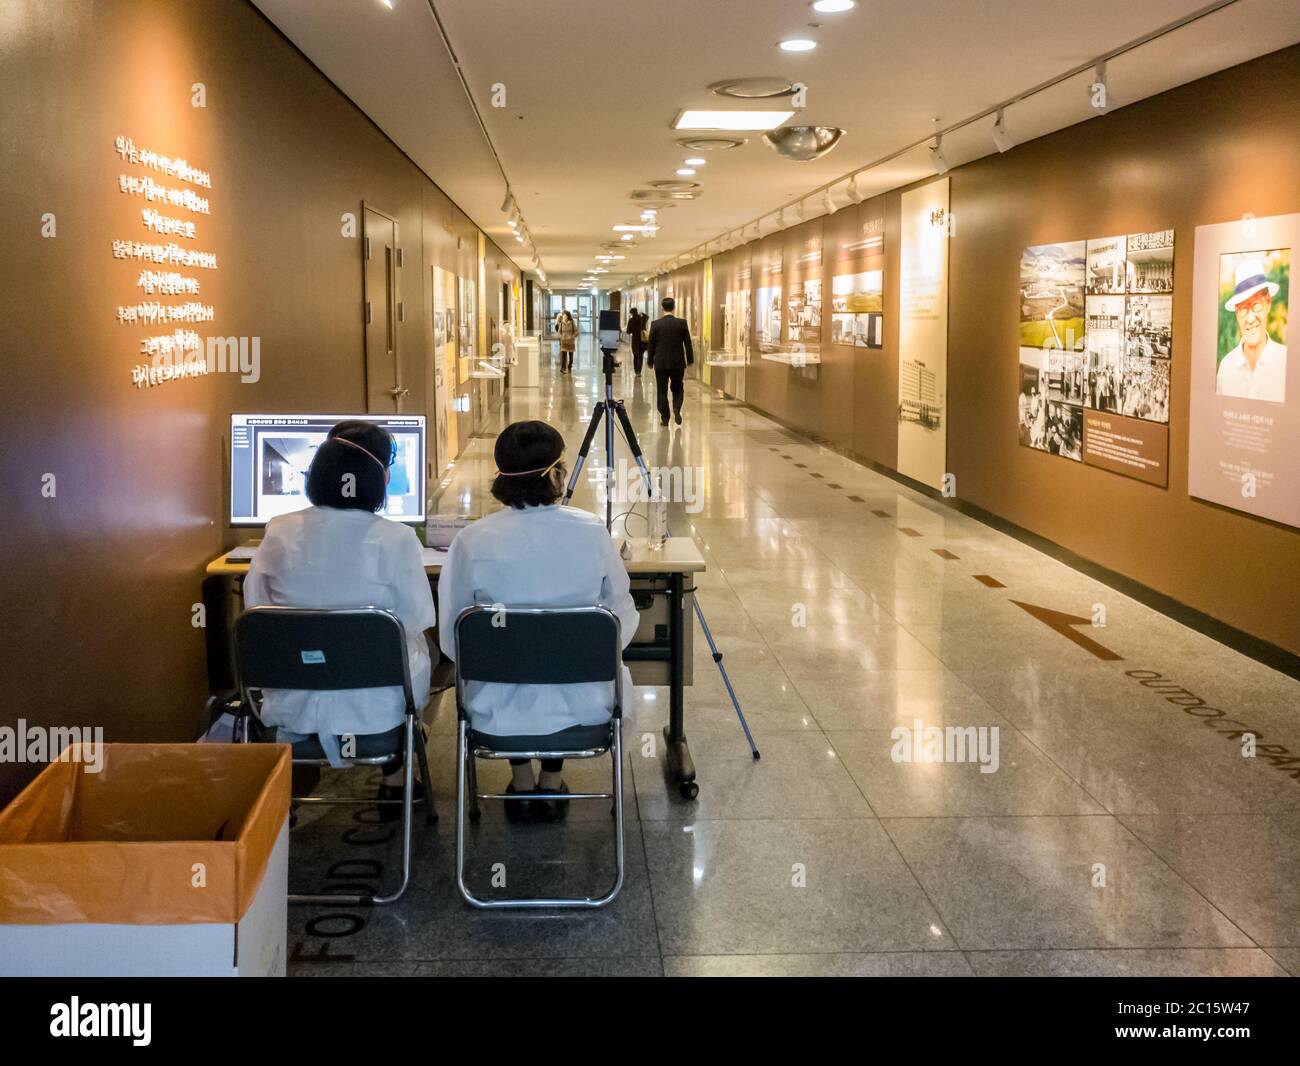 Séoul, Corée du Sud - épidémie de coronavirus en Corée. Quarantaine de COVID-19 dans le plus grand hôpital de Corée. Le personnel médical se charge du dépistage par caméra thermique. Banque D'Images